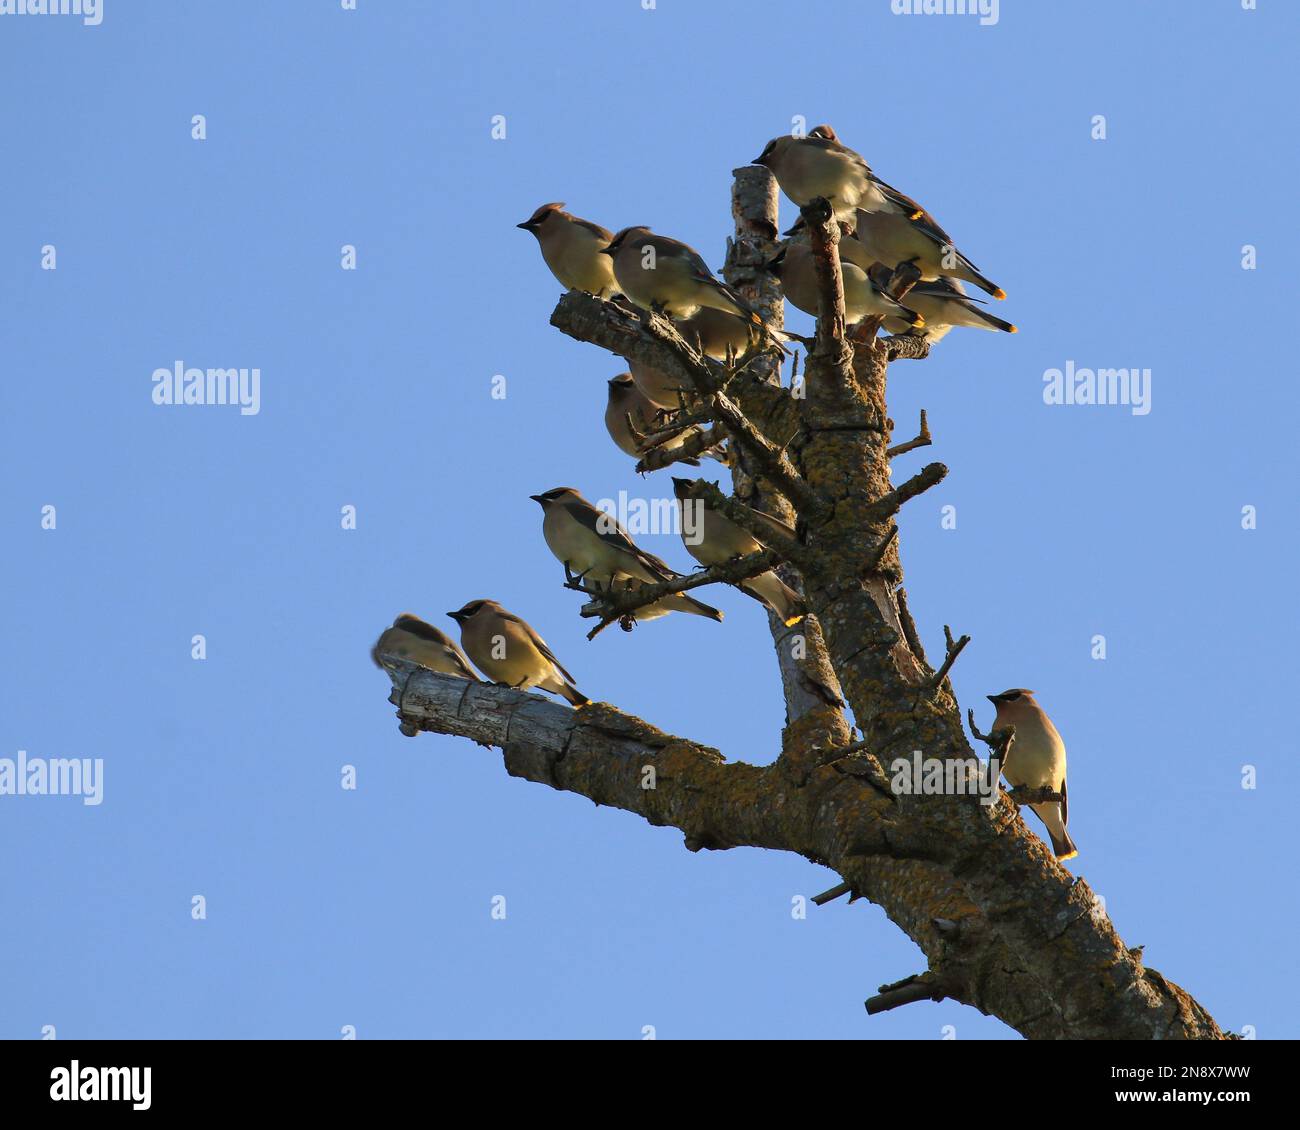 Un rebaño de alitas de cedro (Bombycilla cedrorum) encaramado en un árbol muerto y todos mirando de la misma manera. Tomado en Victoria, BC, Canadá. Foto de stock